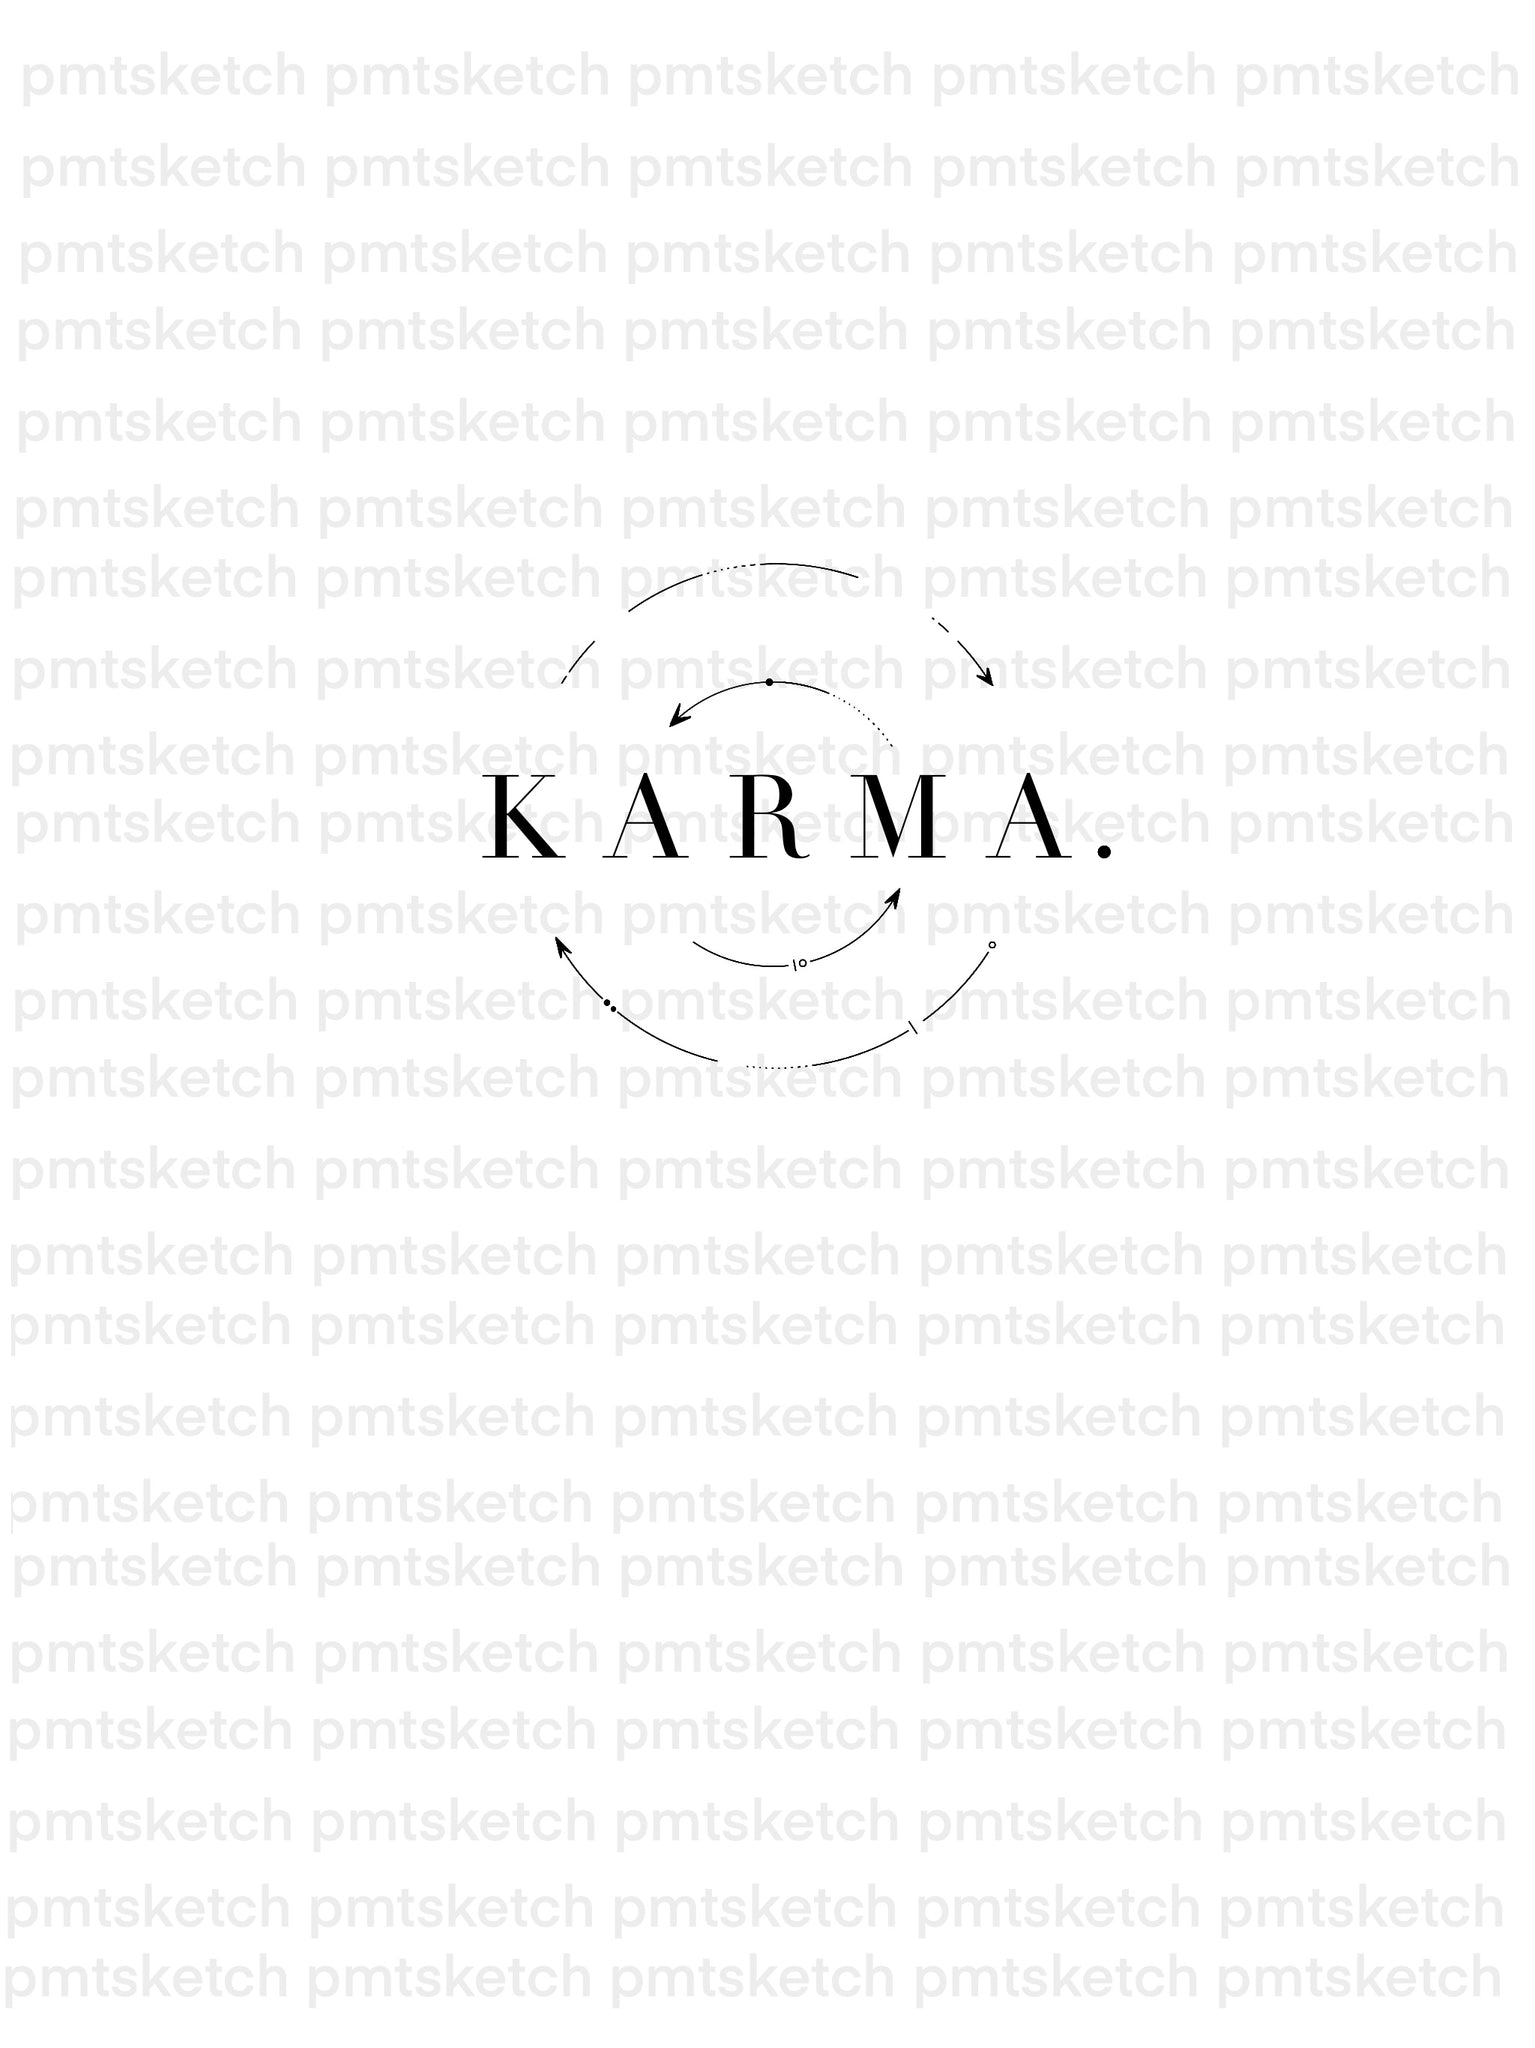 Karma Circle